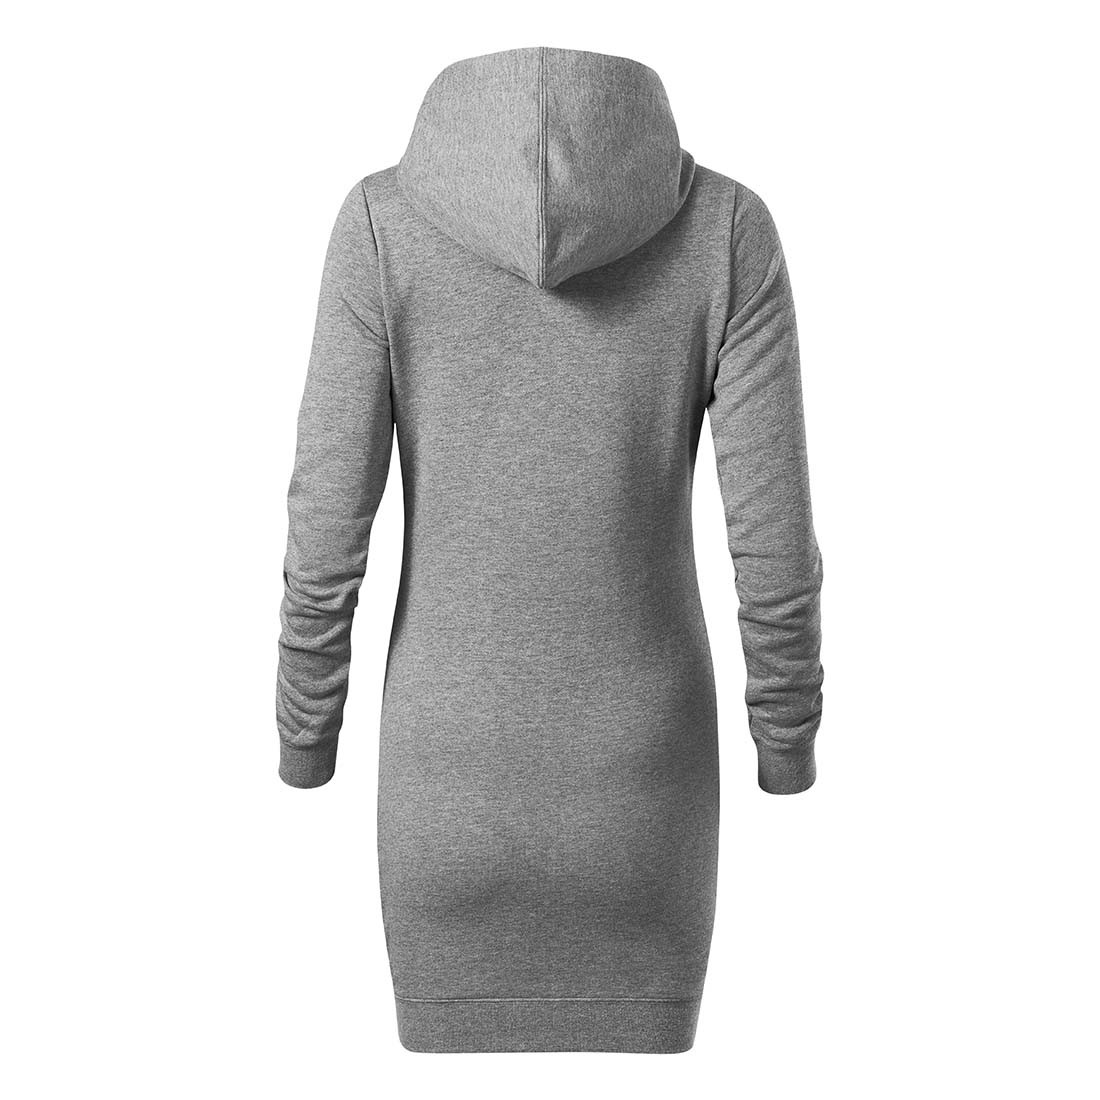 Robe femme à capuche SNAP - Les vêtements de protection